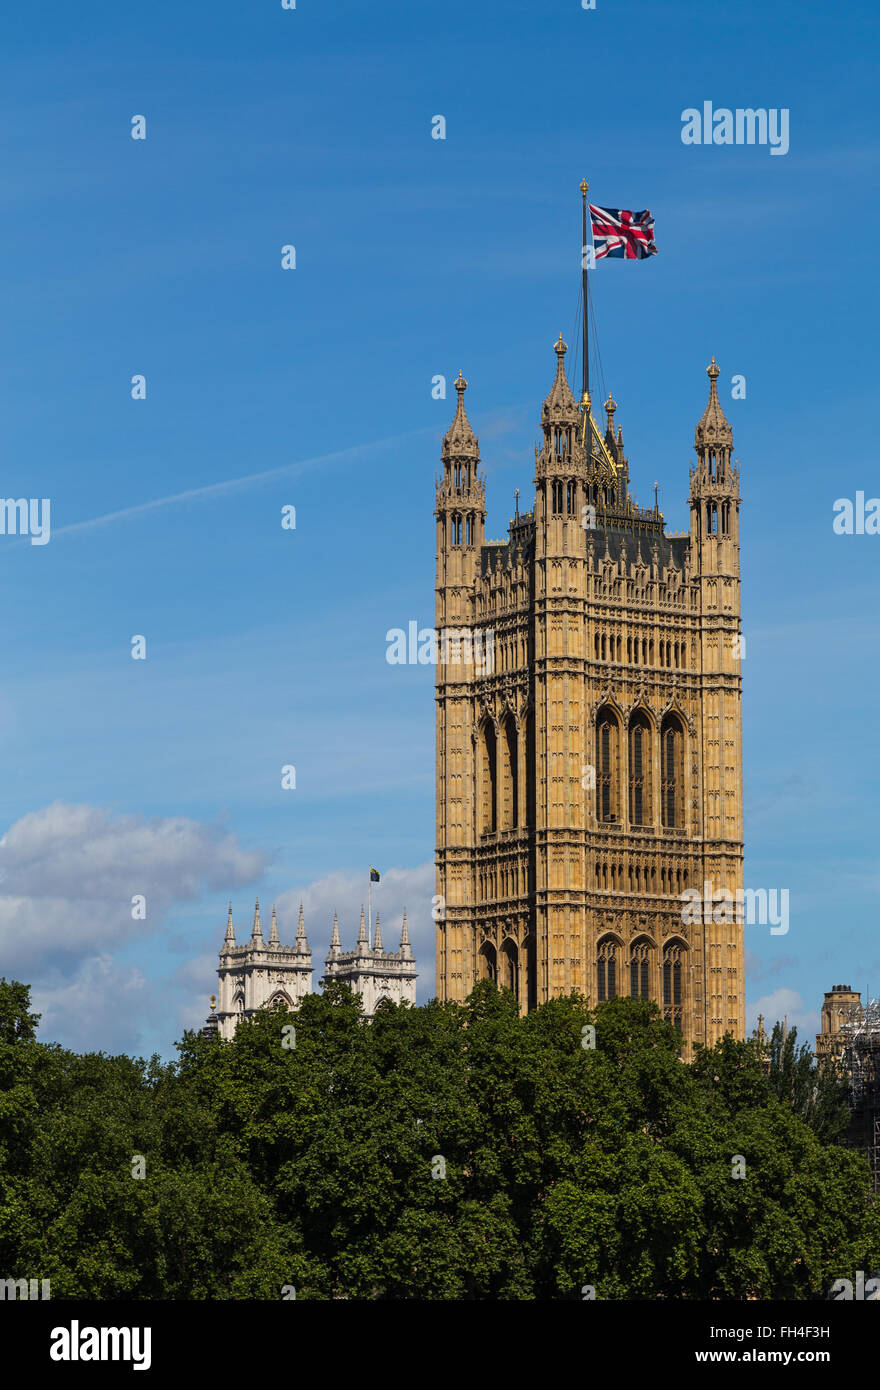 La Tour Victoria à Londres au cours de l'été avec l'Union Jack flag flying en haut de c Banque D'Images